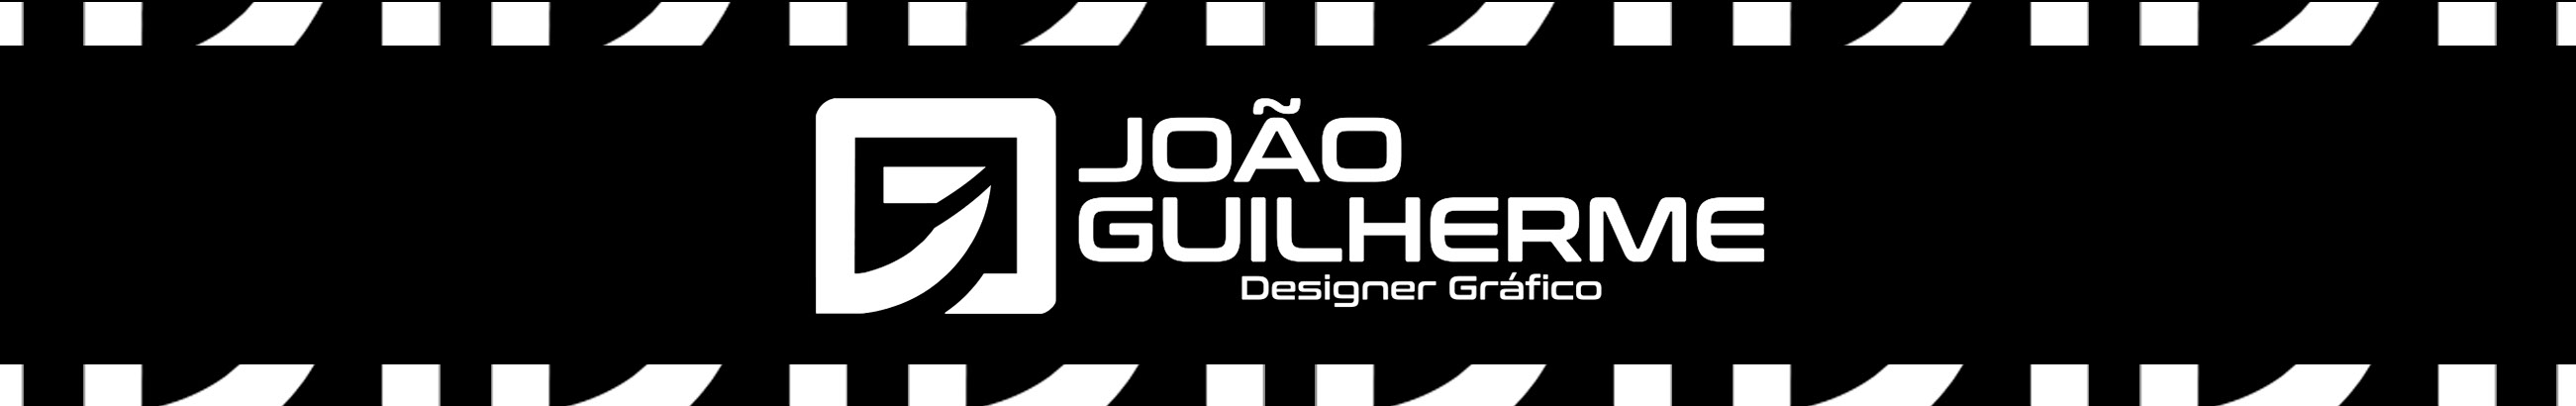 JOÃO GUILHERMEs profilbanner